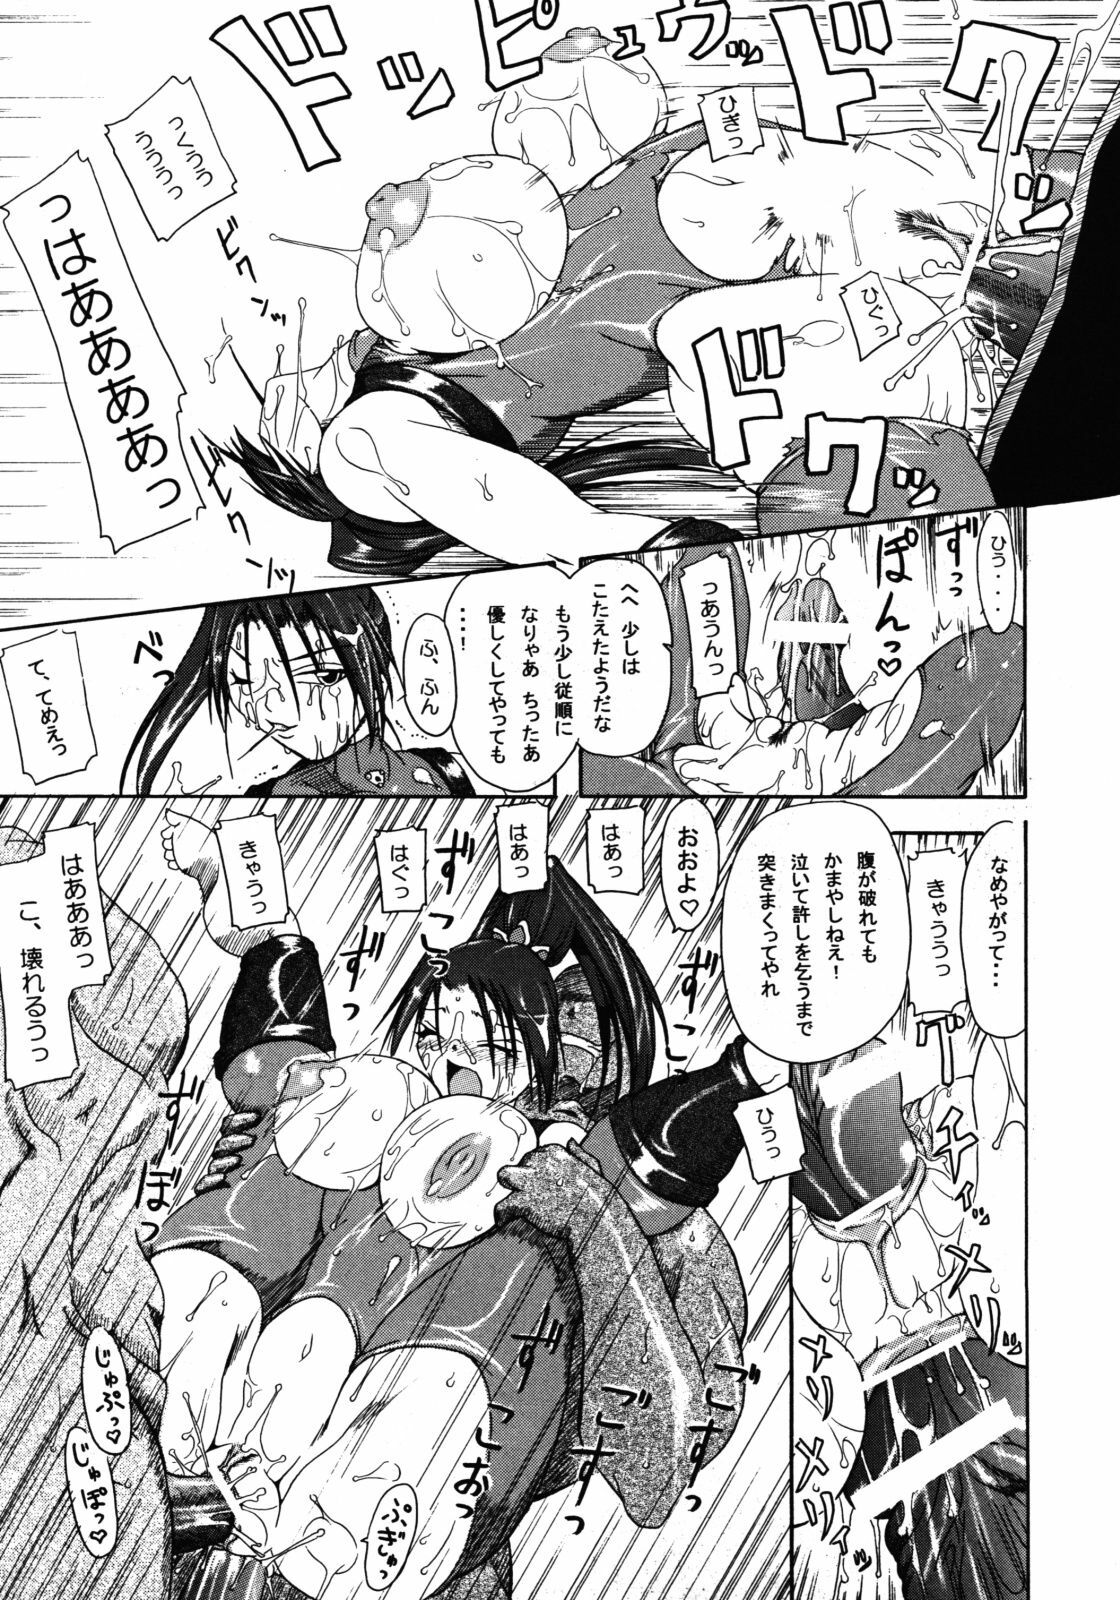 (SC24) [Furuya (Take)] Kakugee Zanmai 4 (Darkstalkers, SoulCalibur) page 8 full